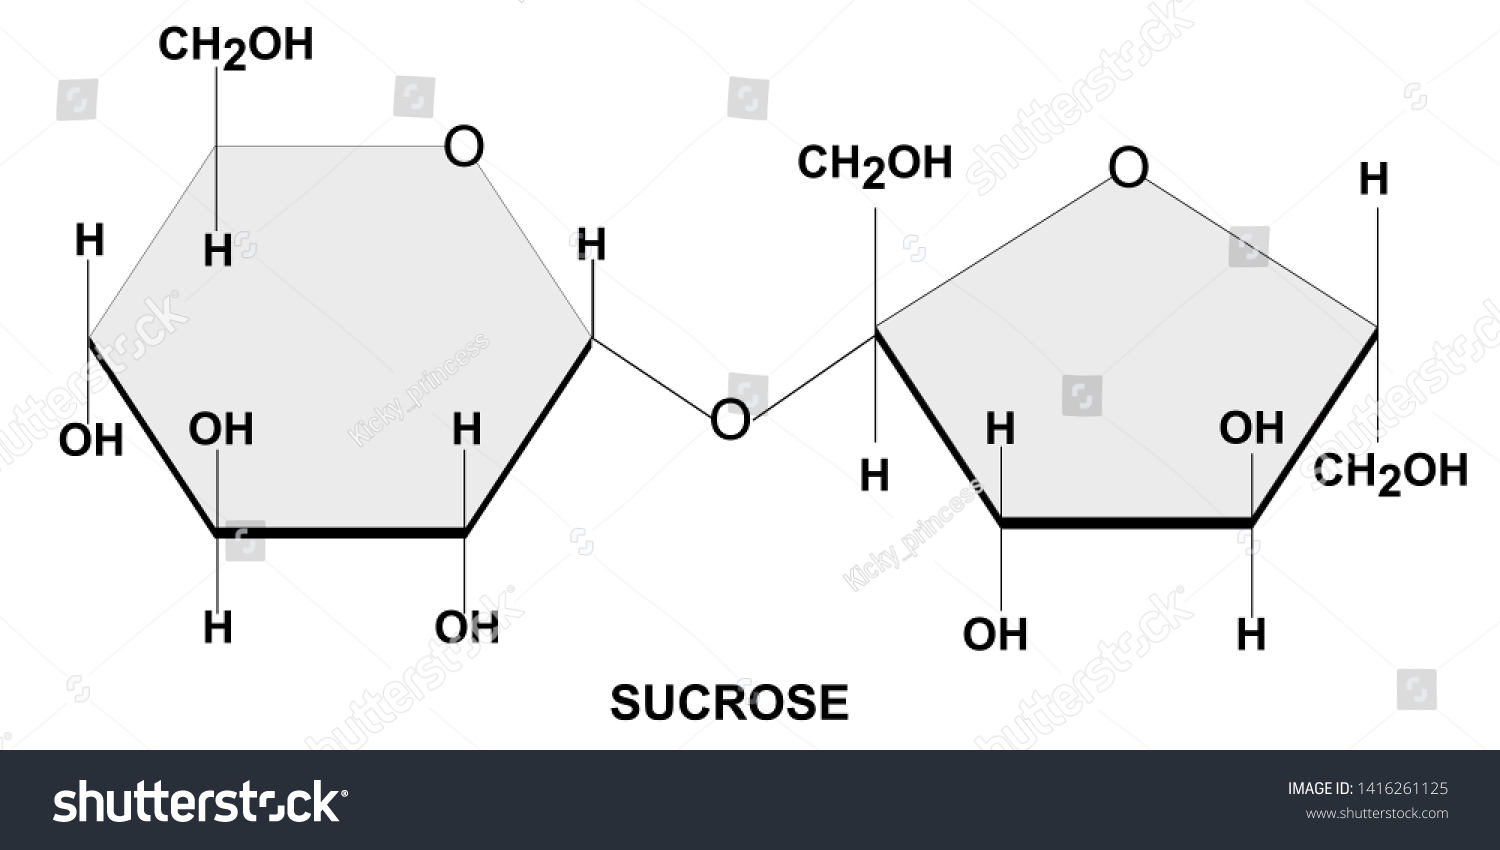 SVG of 
Structural chemical formula and model of sucrose svg